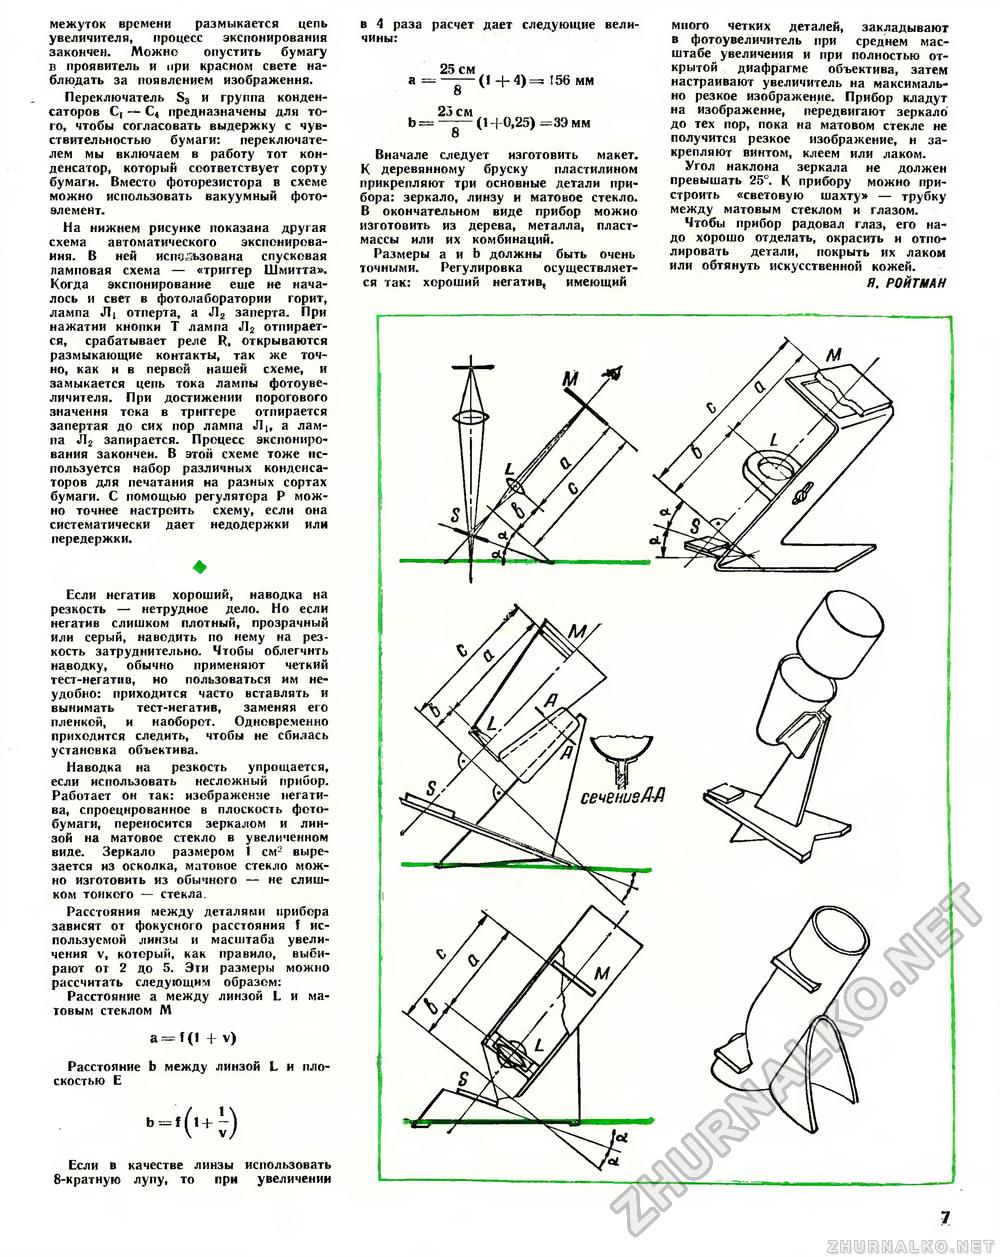 Юный техник - для умелых рук 1972-05, страница 7